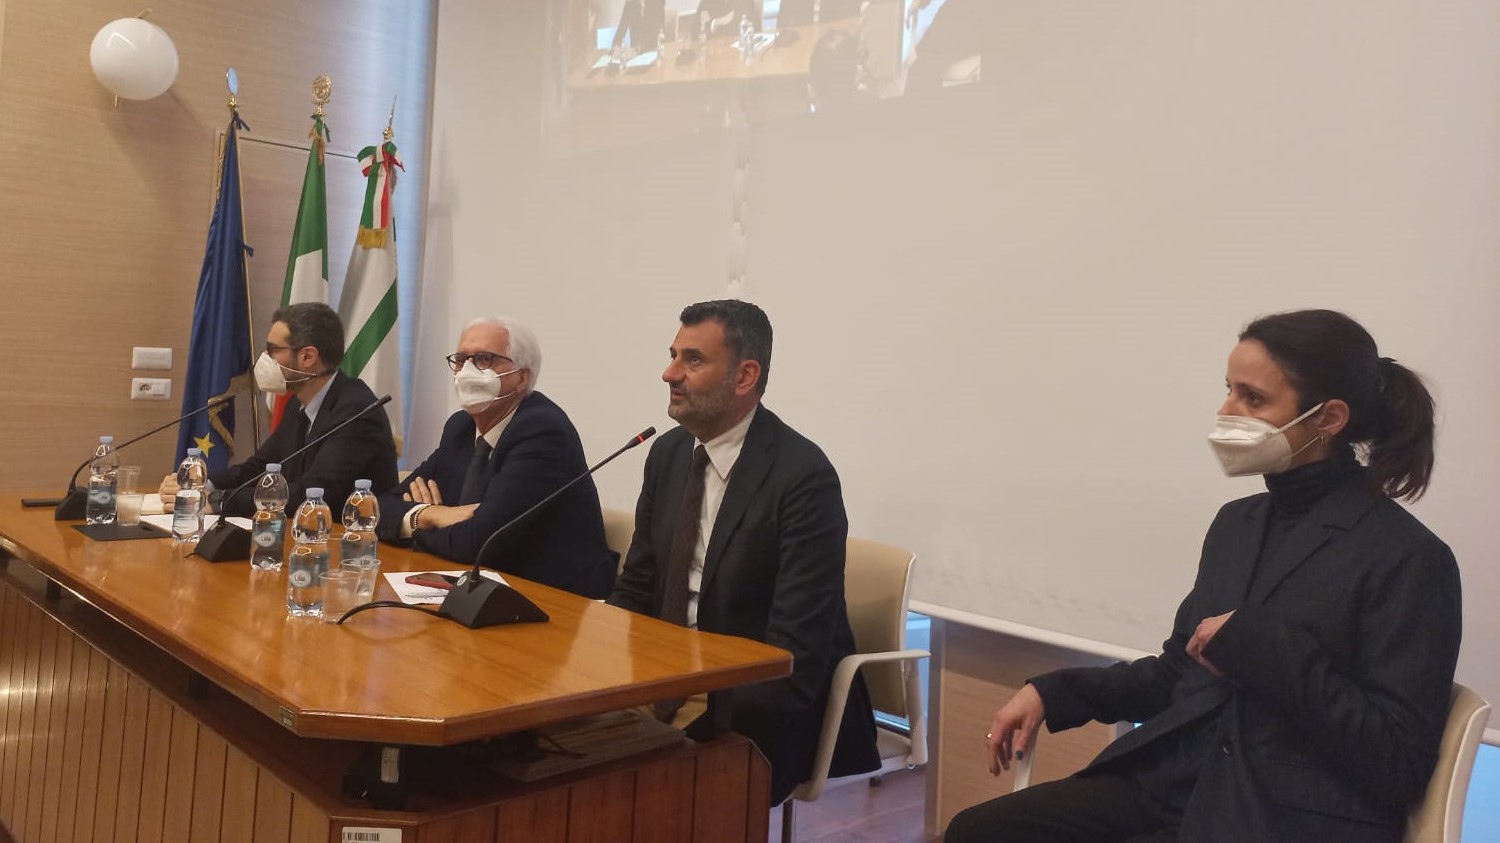 Conferenza dibattito pubblico Bari-Mola